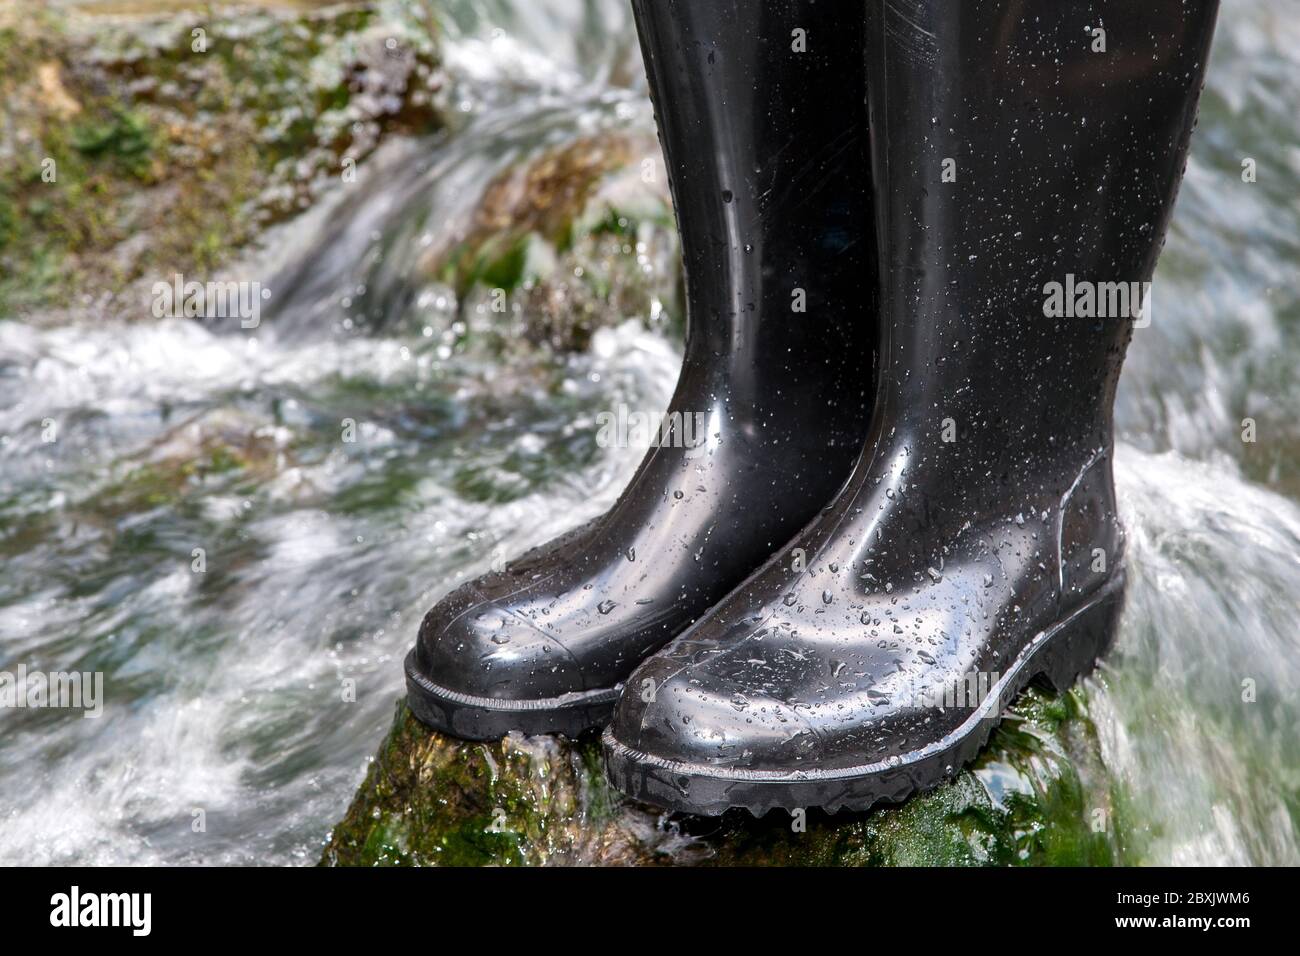 Schwarze Gummistiefel stehen auf einem moosbedeckten Stein inmitten des rauschenden Wassers eines Baches. Stockfoto